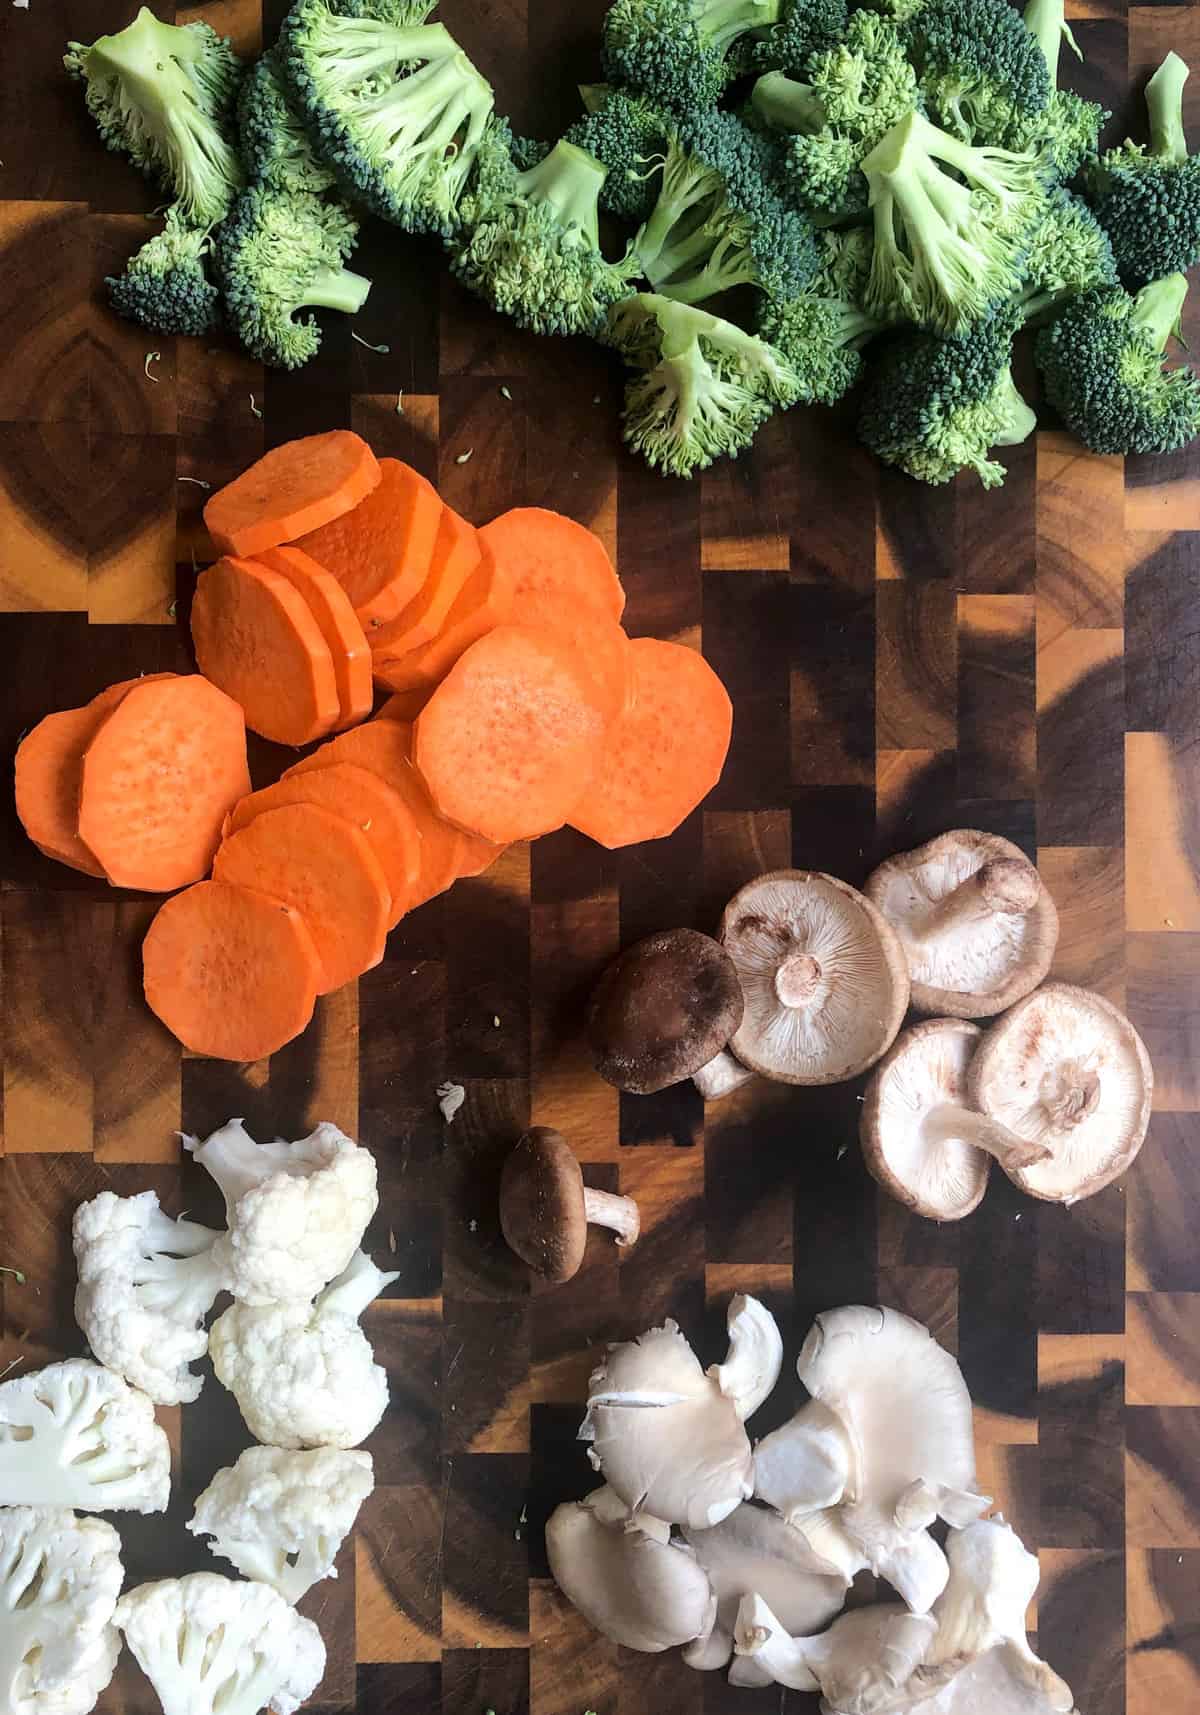 cauliflower, broccoli, sweetpotatoes, and mushrooms.